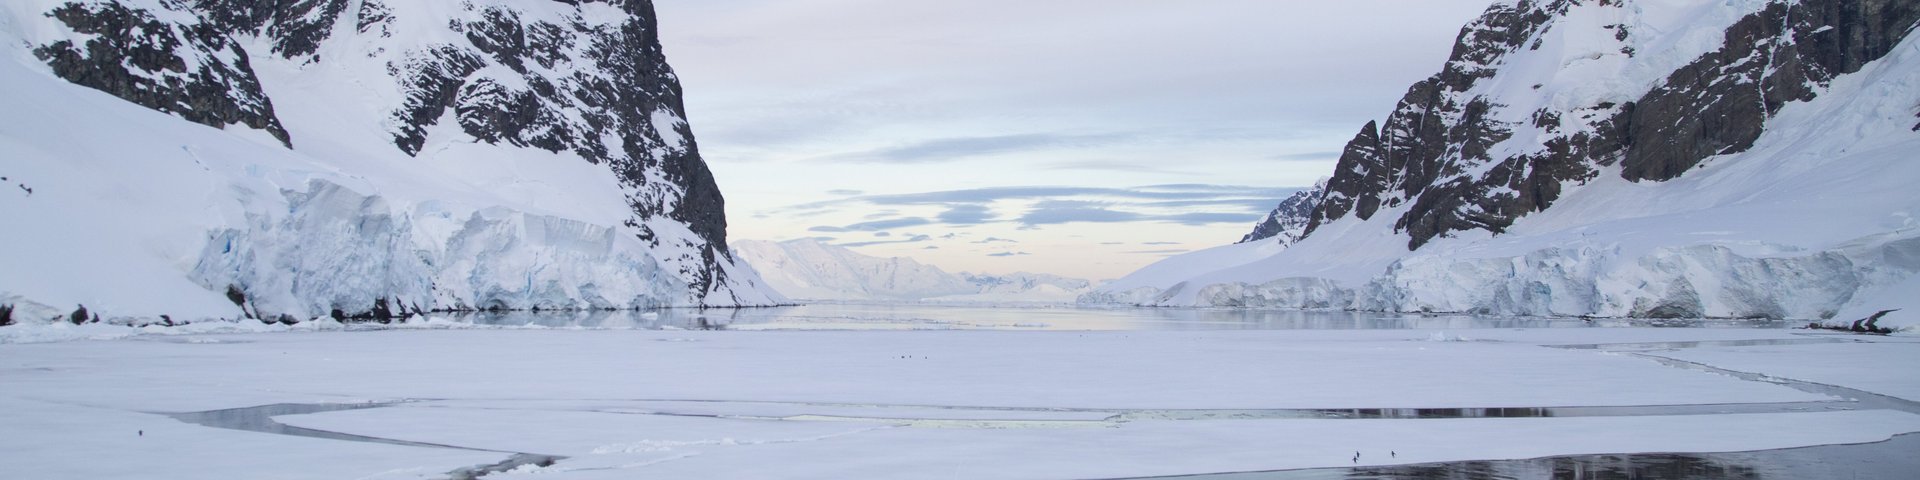 Winterlicher Fjord mit dünnem Packeis